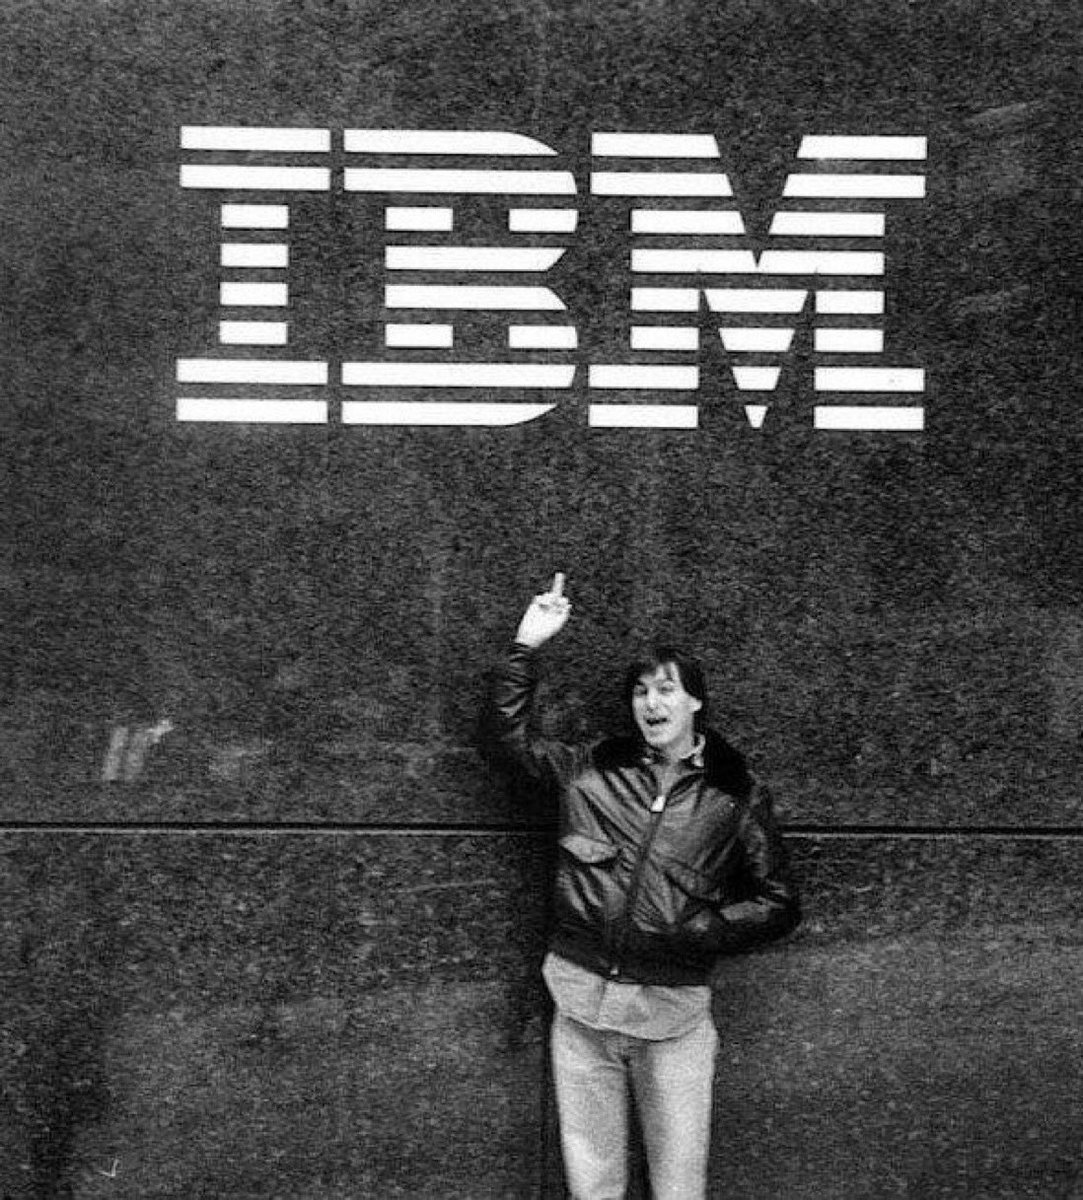 Steve Jobs outside of IBM’s office in 1983.